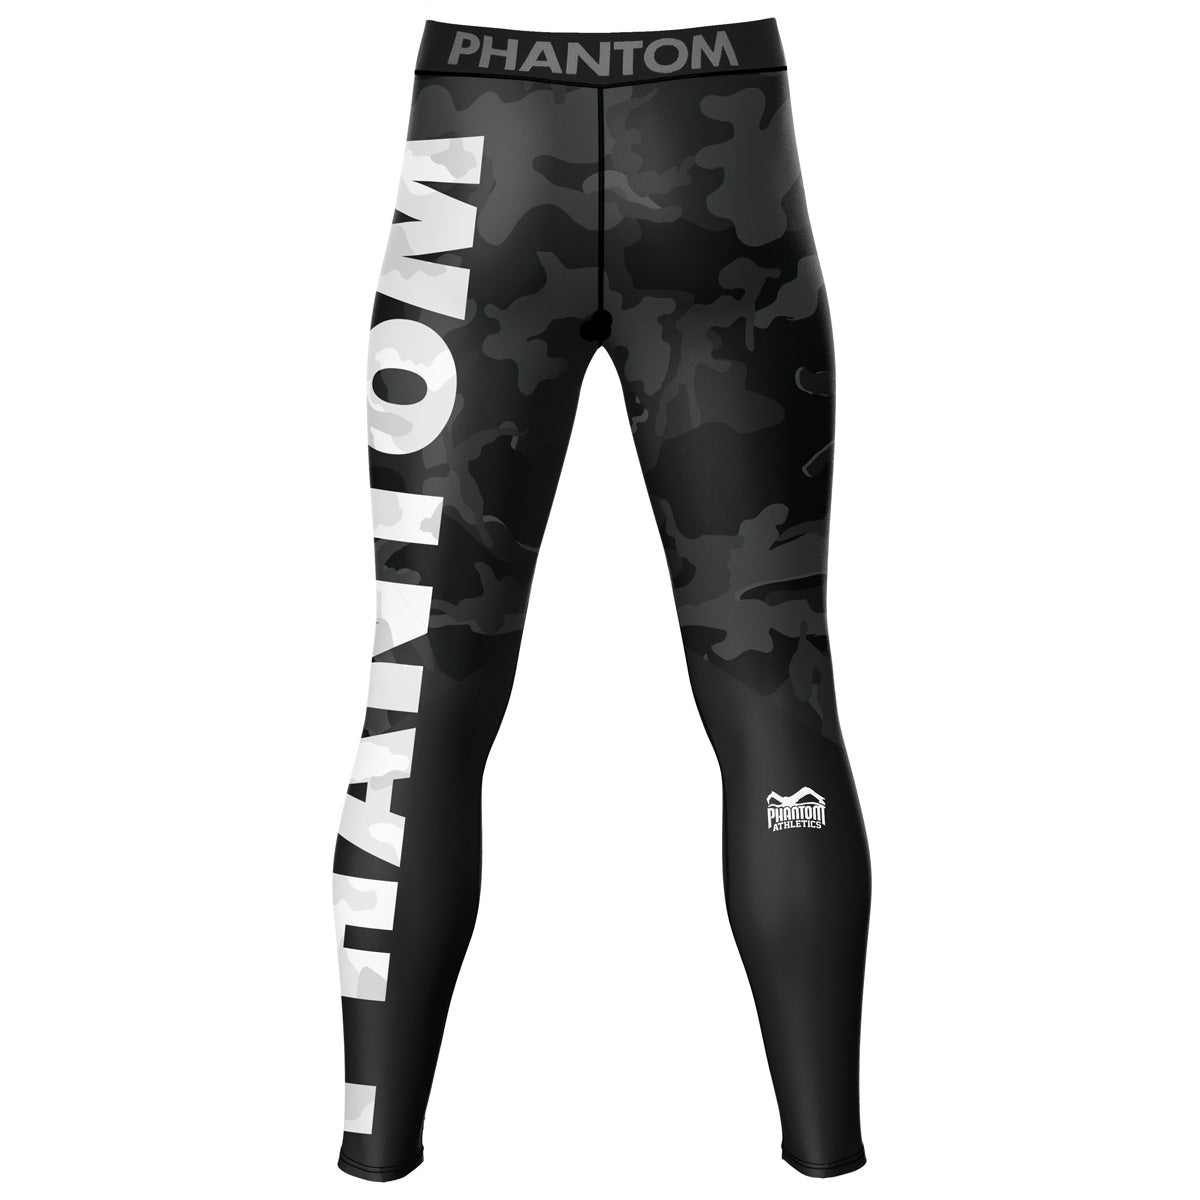 Phantom Compression Tights im Camo Design für Kampfsport Training und Wettkampf. Ideal auf der Matte beim Ringen, Grappling, BJJ oder auch im MMA: